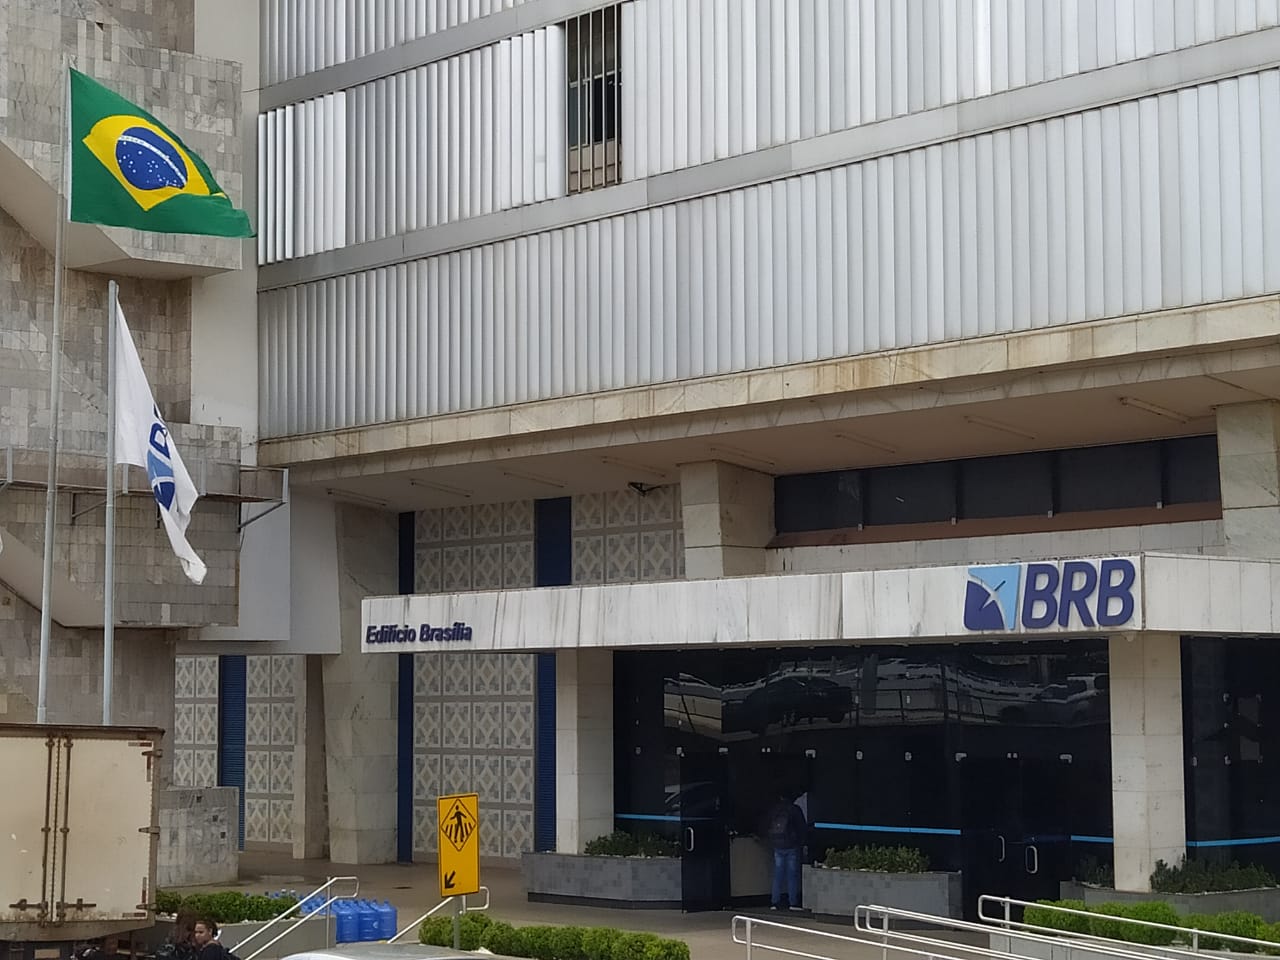 brb - banco de brasília